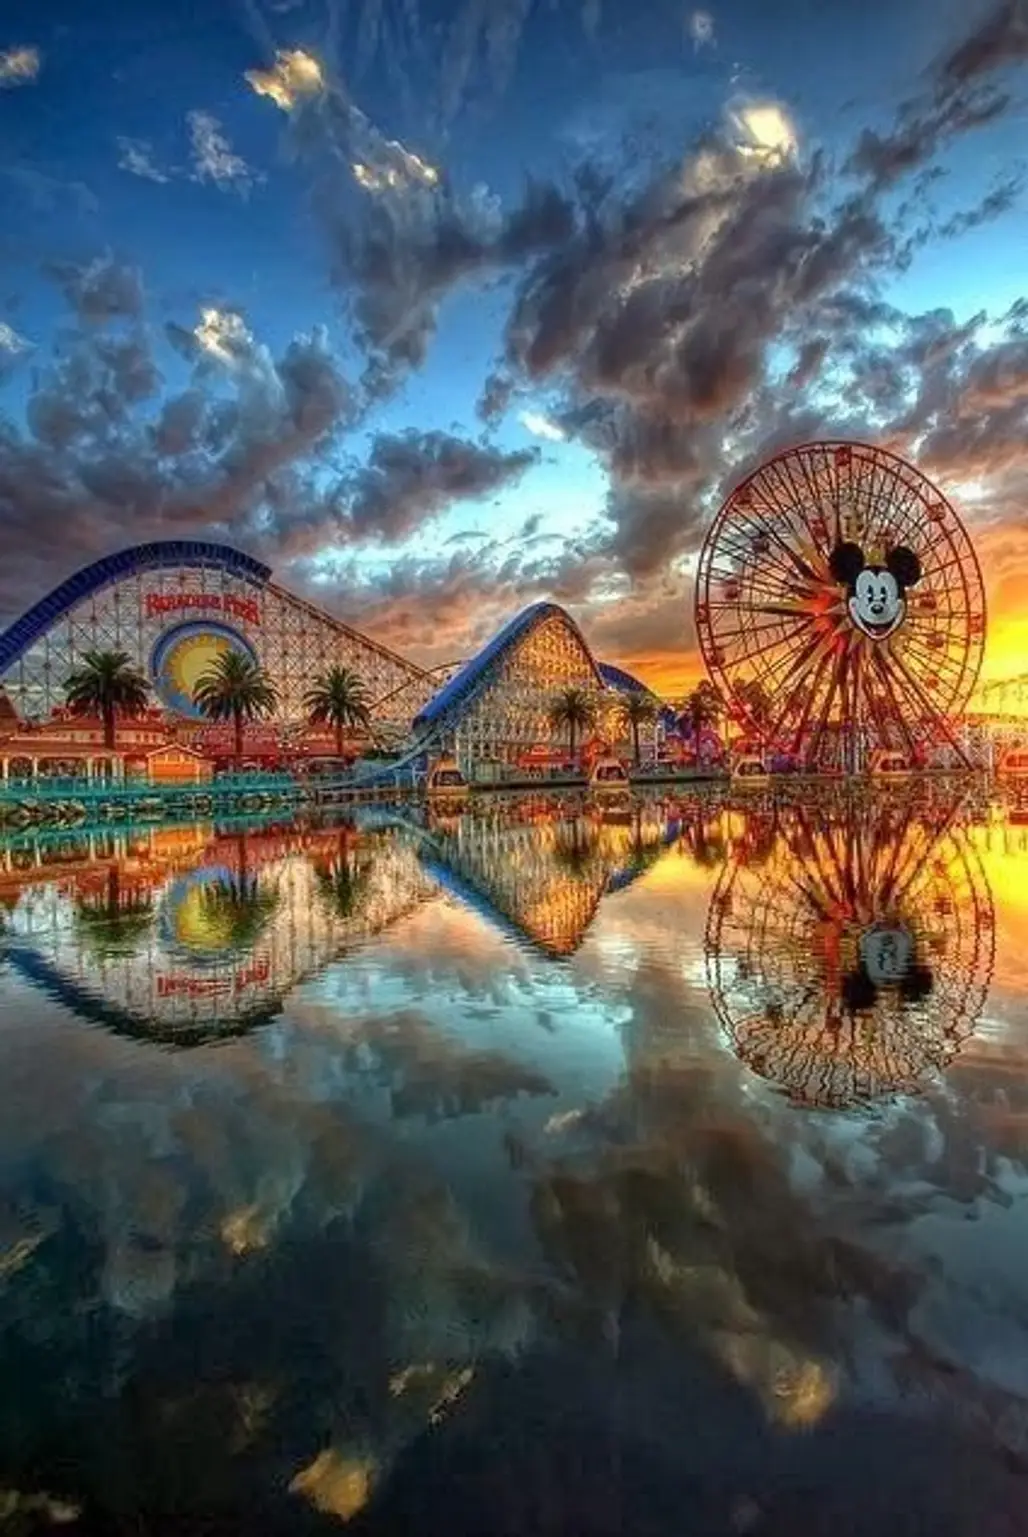 amusement park,amusement ride,park,outdoor recreation,recreation,